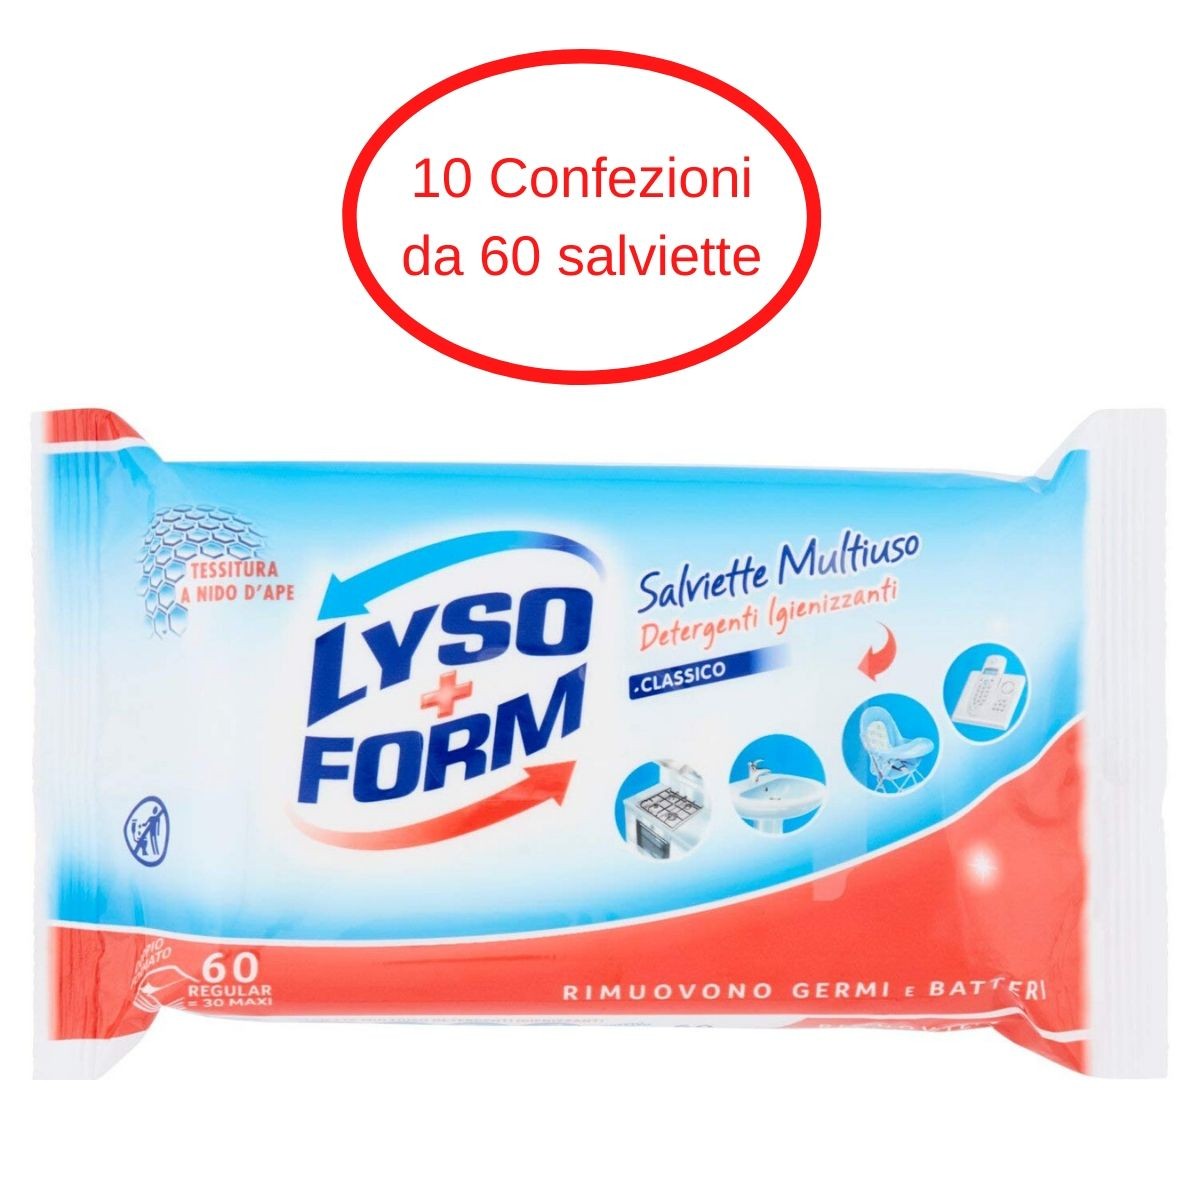 https://buonitaly.it/1555343/1000068180-lyso-form-salviette-igienizzanti-detergenti-multiuso-10-confezioni-da-30x2-salviette.jpg